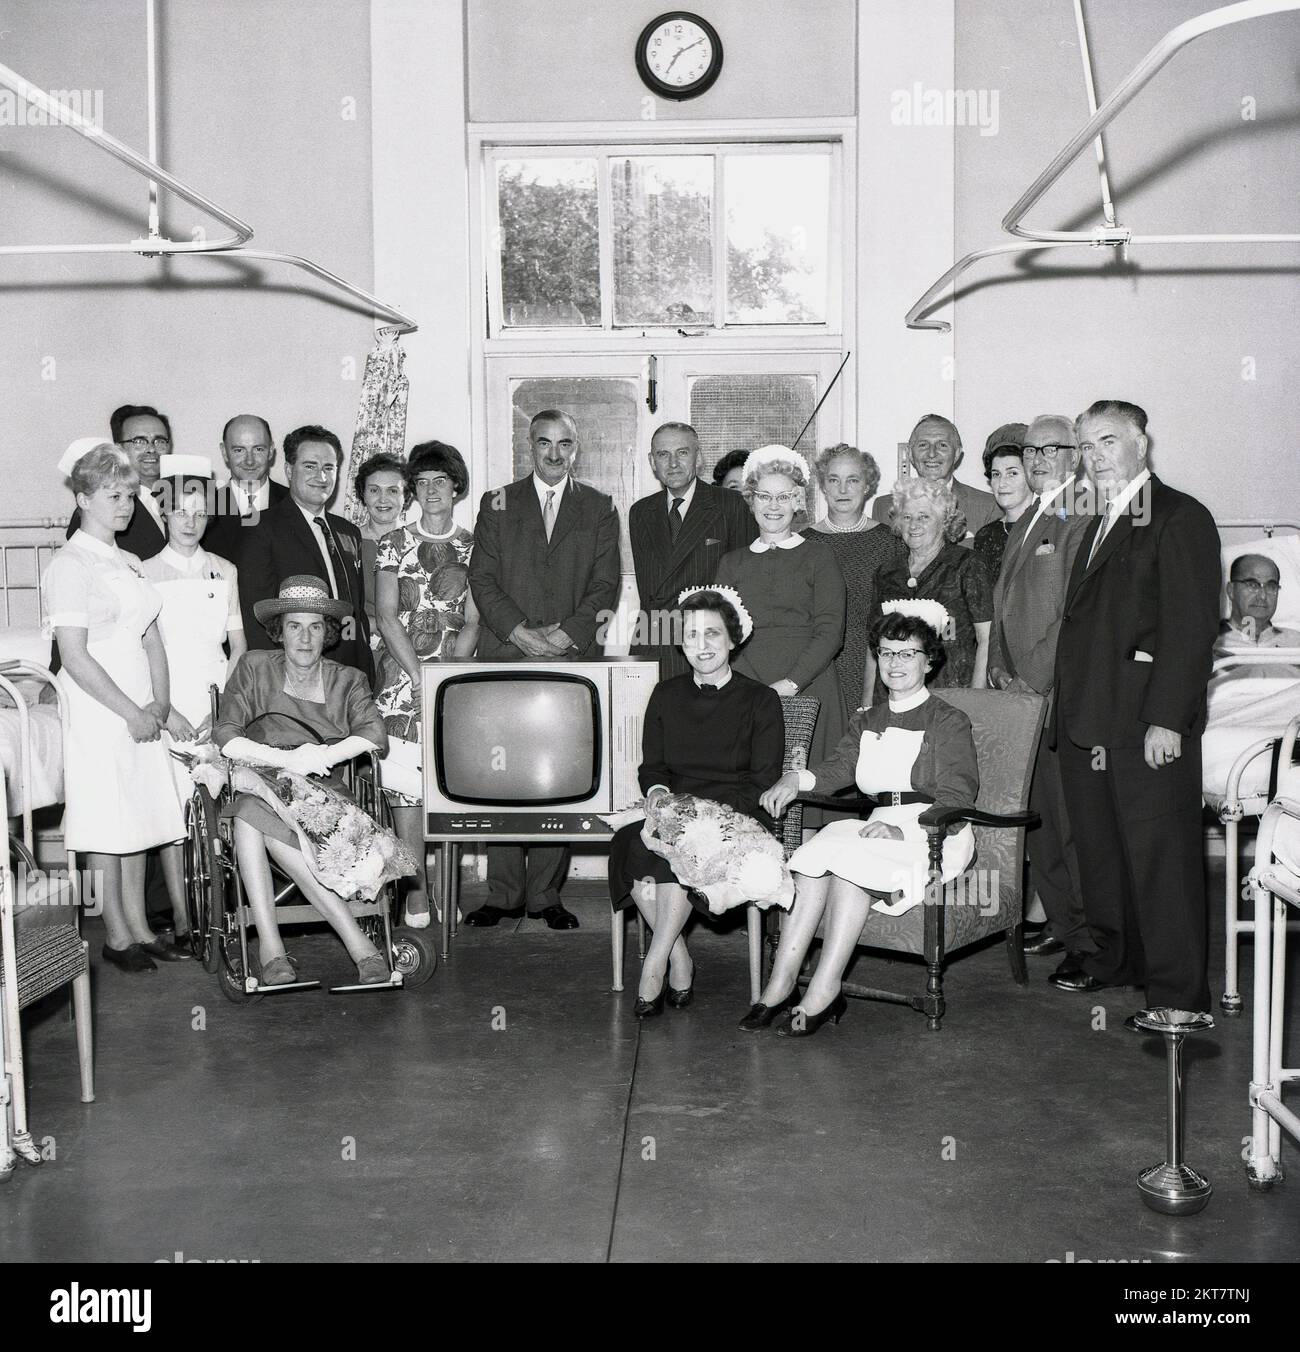 1964, storico, agosto e una foto di gruppo per il personale e i pazienti come nuovo televisore Tindall è stato dato ad un ospedale, Inghilterra, Regno Unito. Nota il posacenere in acciaio inossidabile sulla destra come in questa epoca, il fumo era ancora allowed in molti reparti ospedalieri. Foto Stock